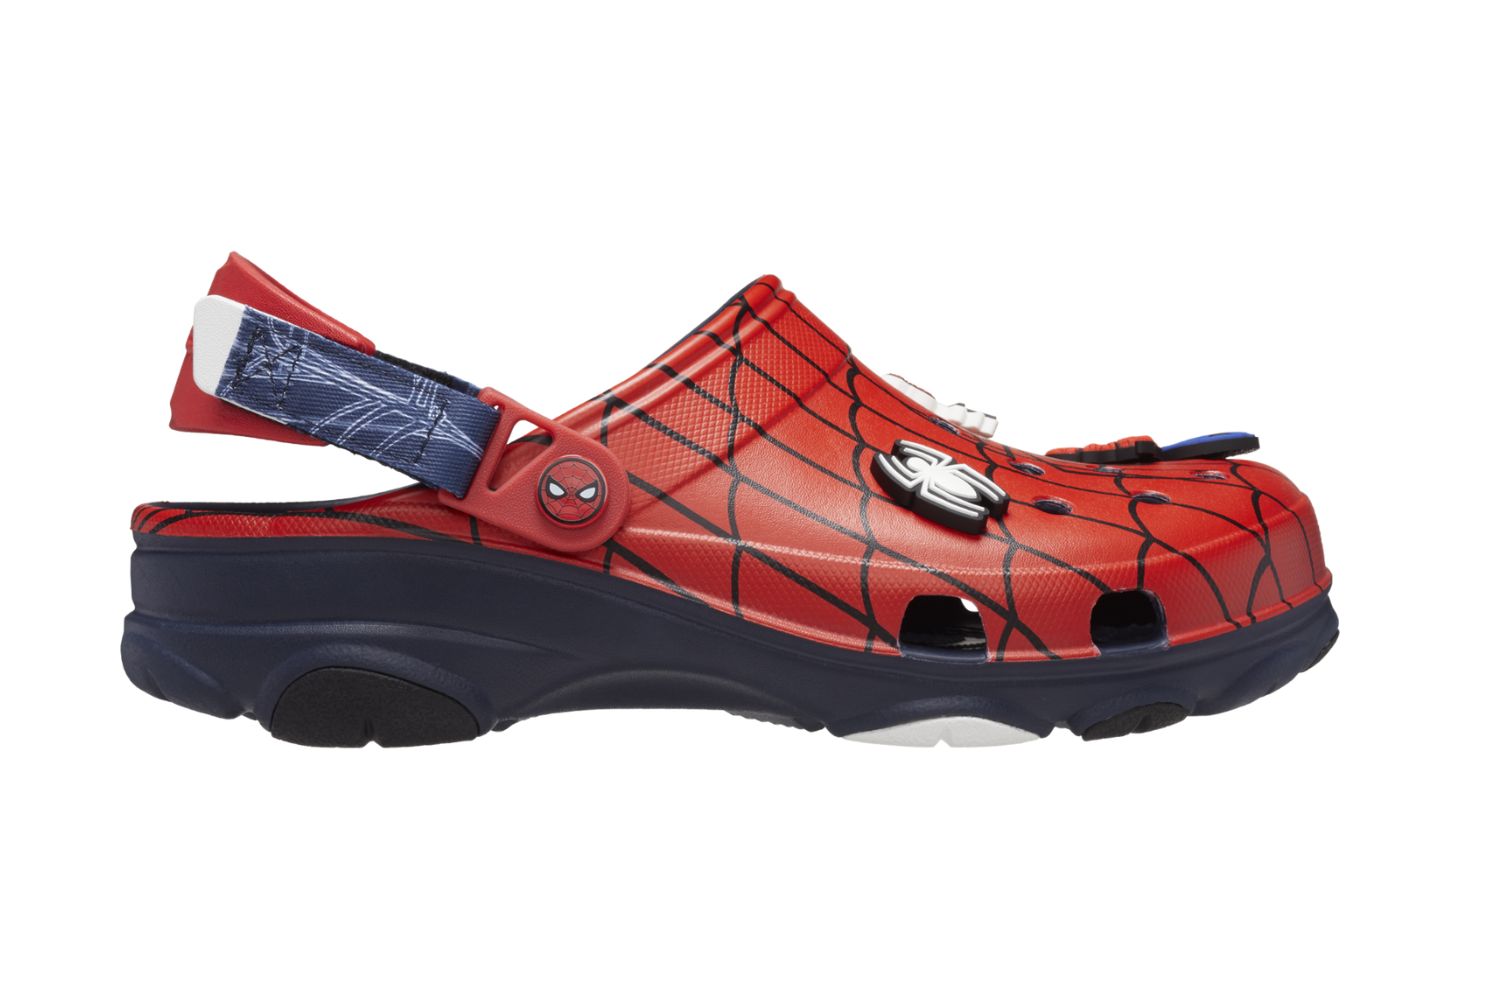 Found these Spider-Man croc charms : r/Spiderman